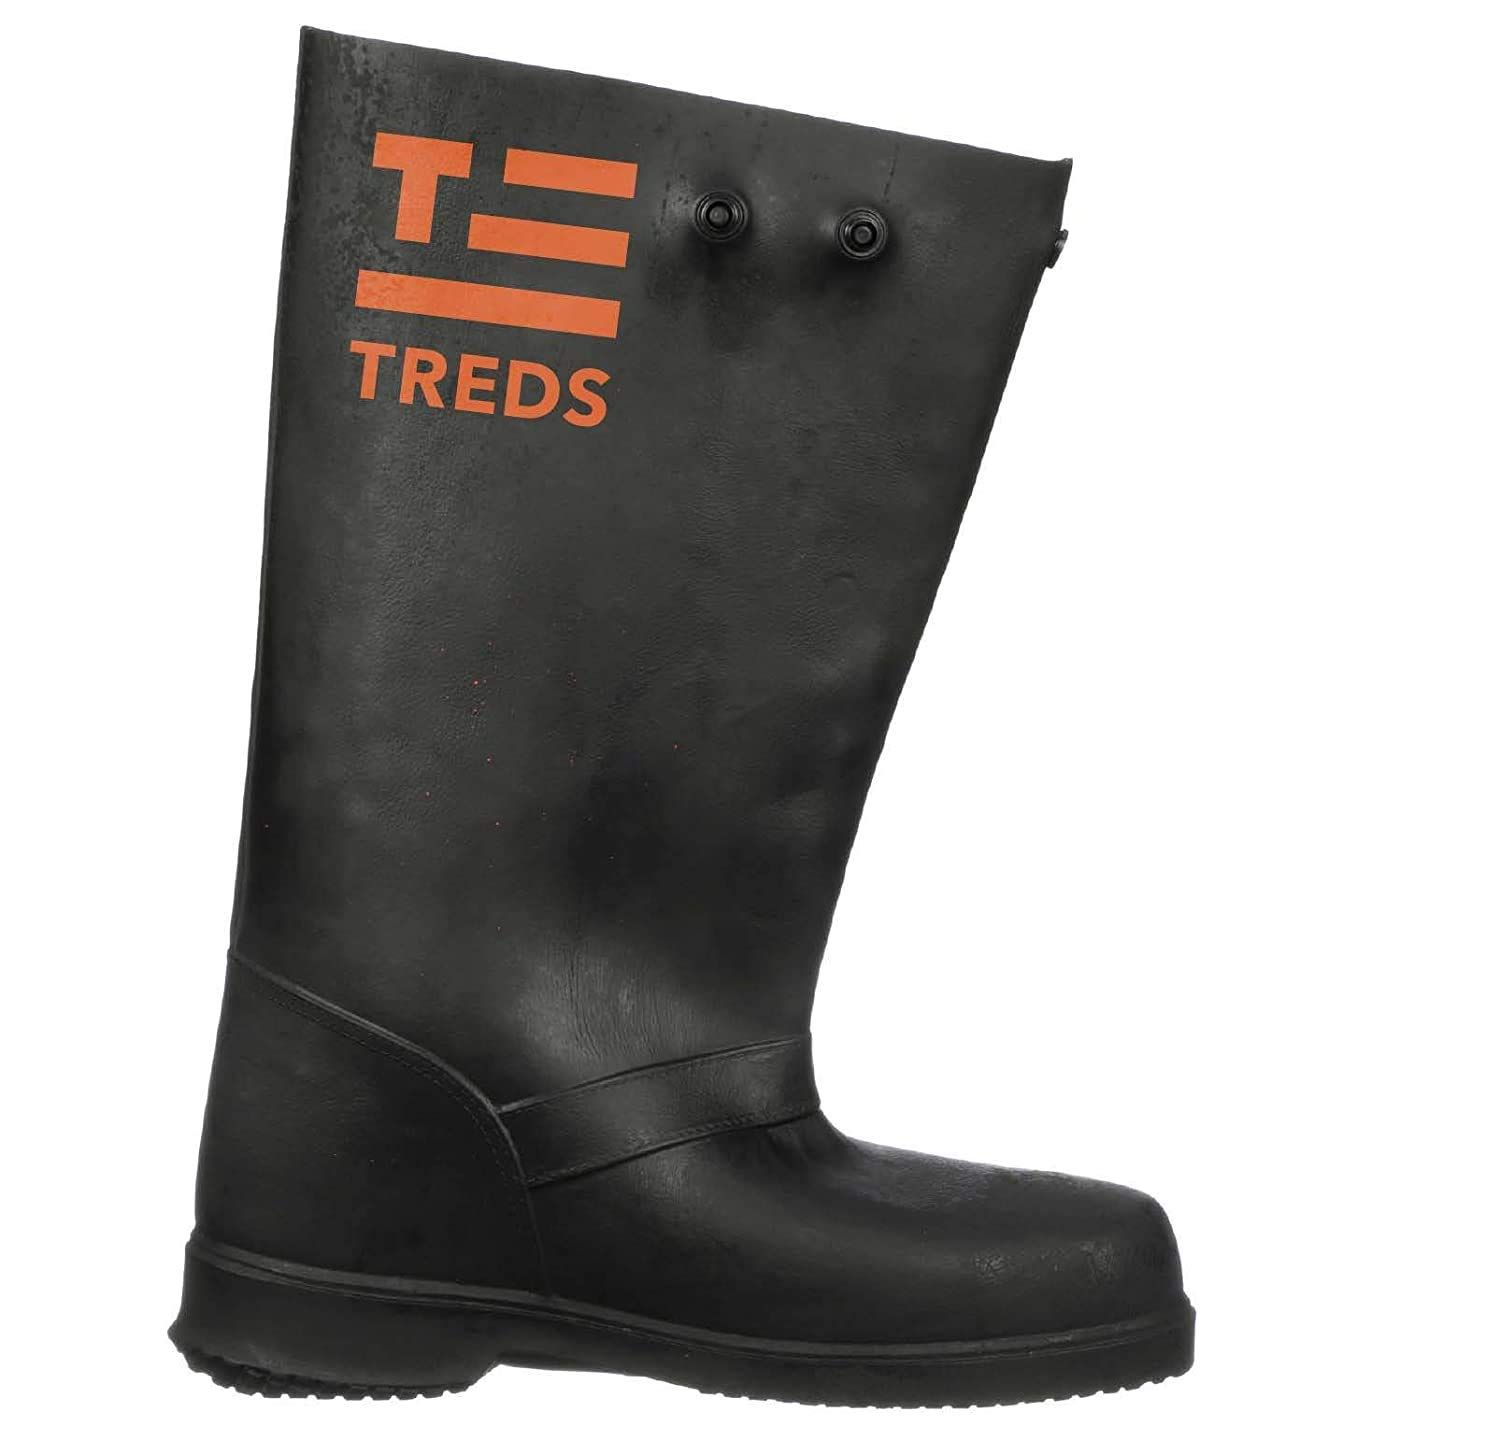 TREDS 17852 - 17&quot; Slush Boots, Large